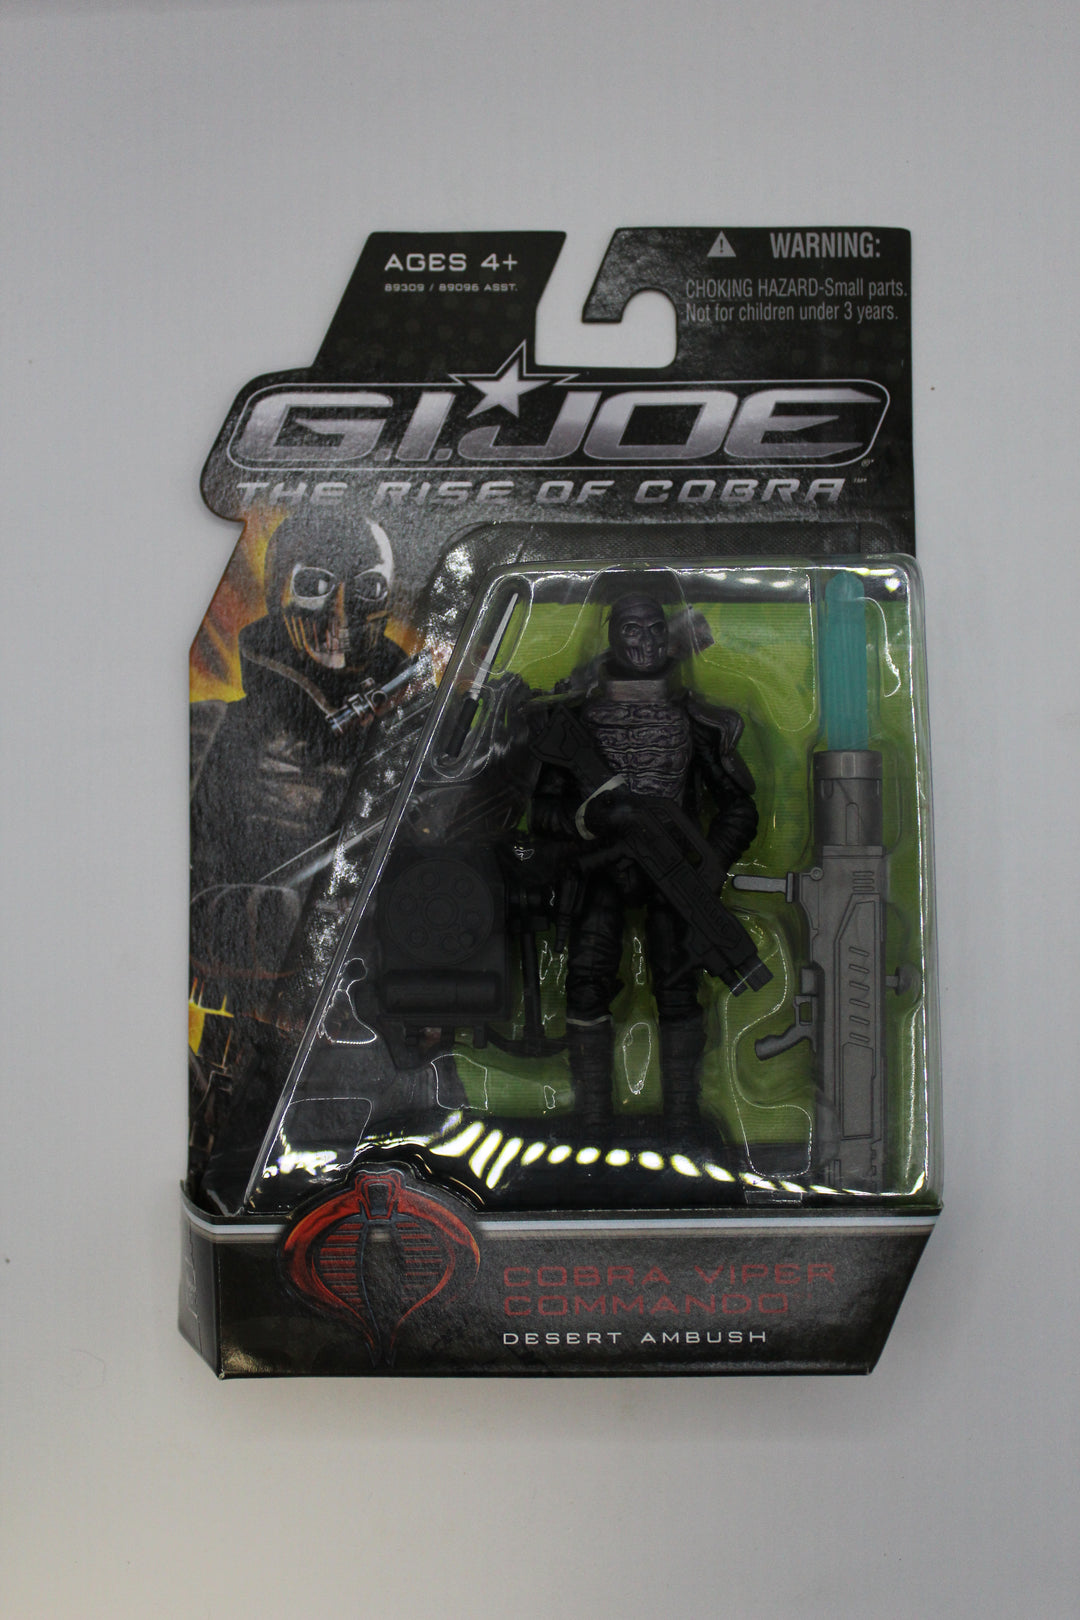 2009 G.I. Joe The Rise of Cobra Cobra Viper Commando